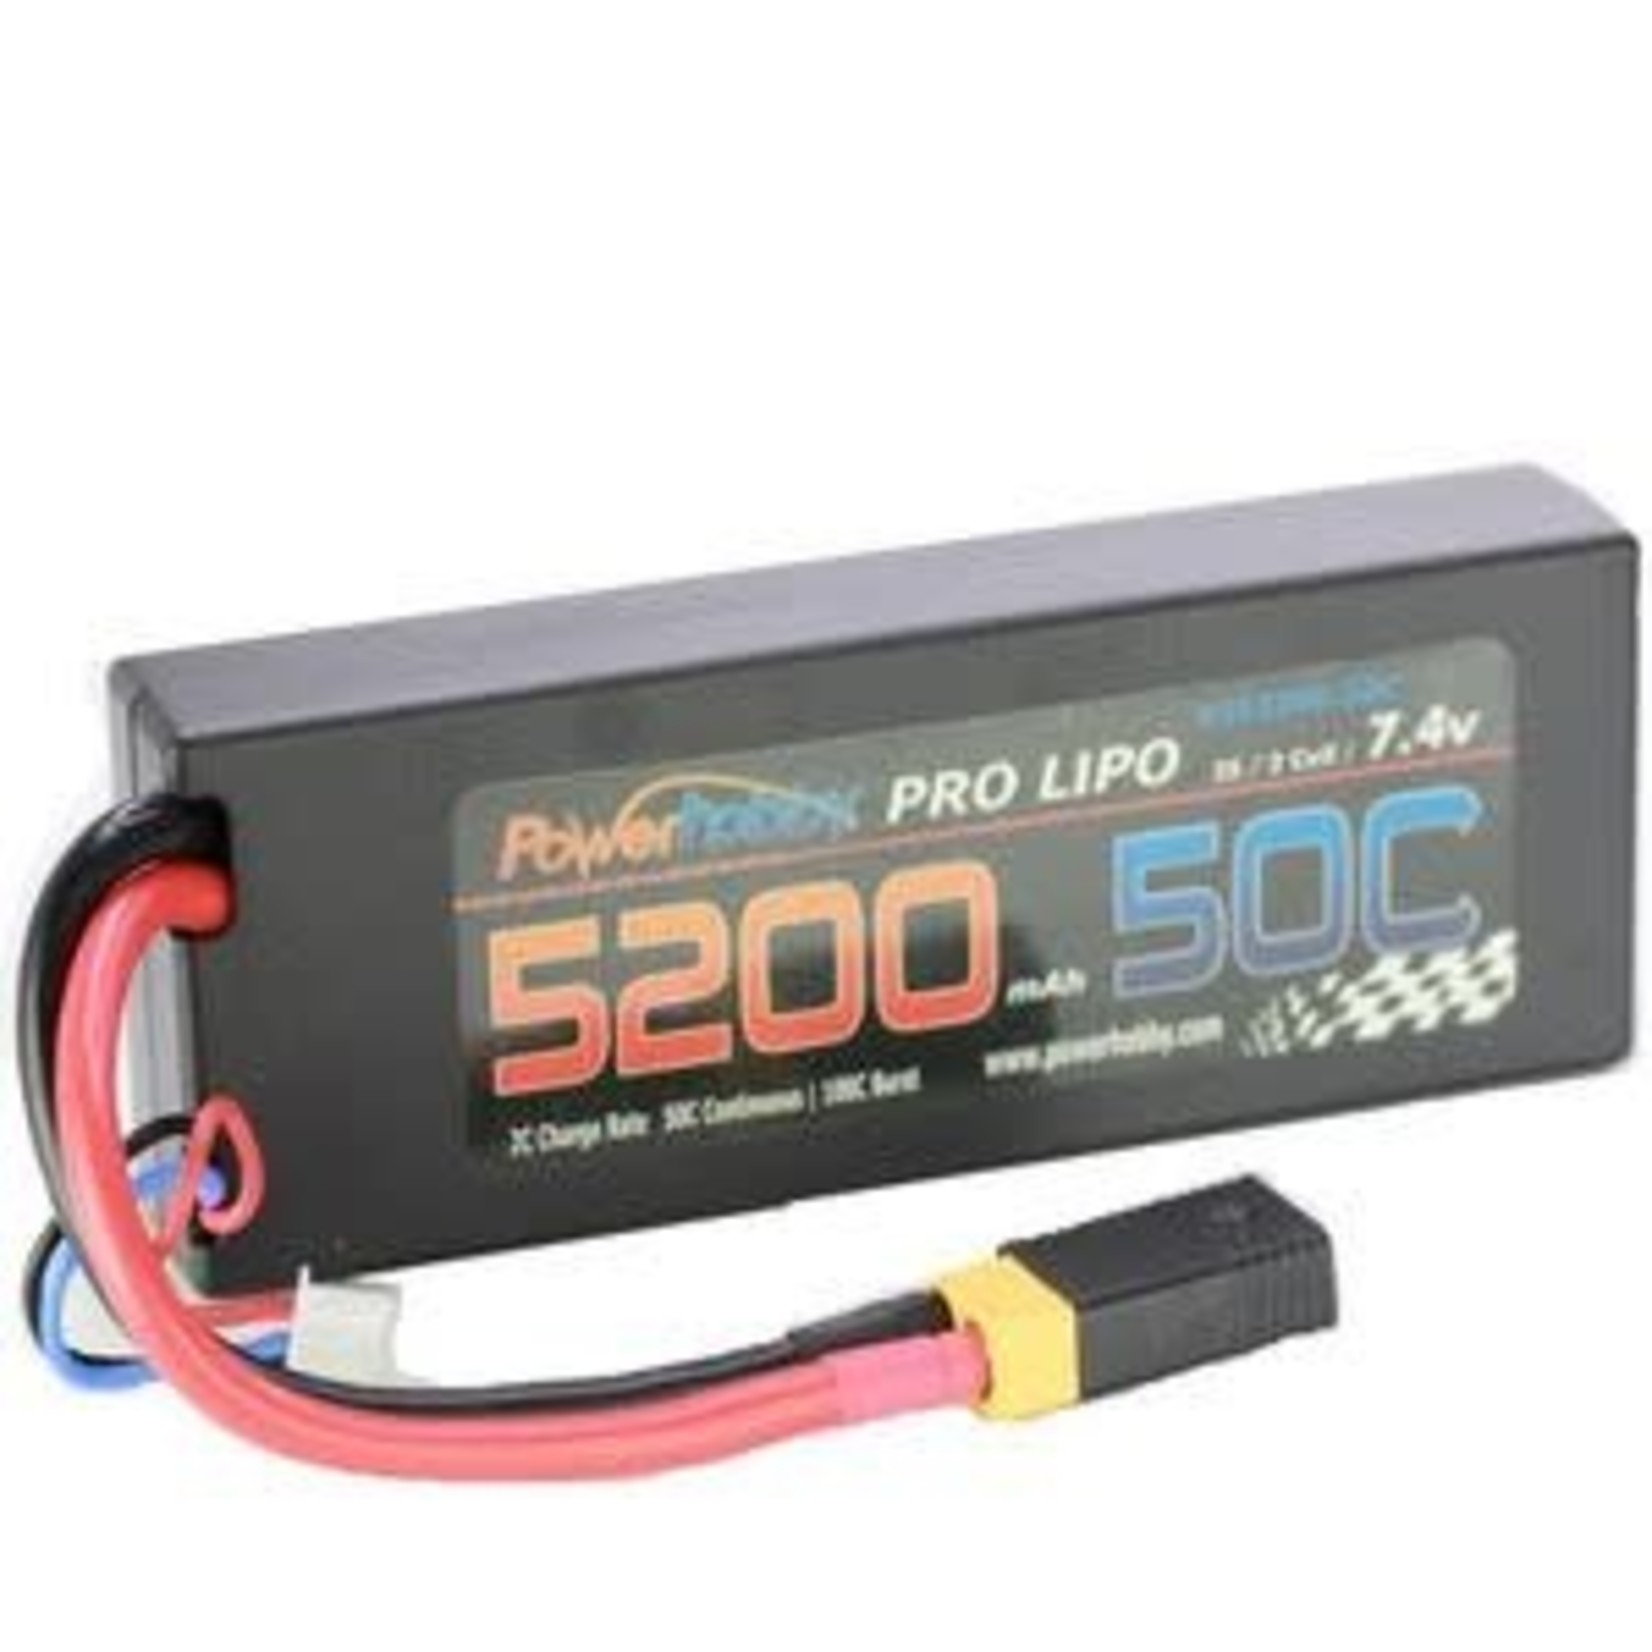 PowerHobby 5200mAh 7.4V 2S 50C LiPo Battery with Hardwired XT60